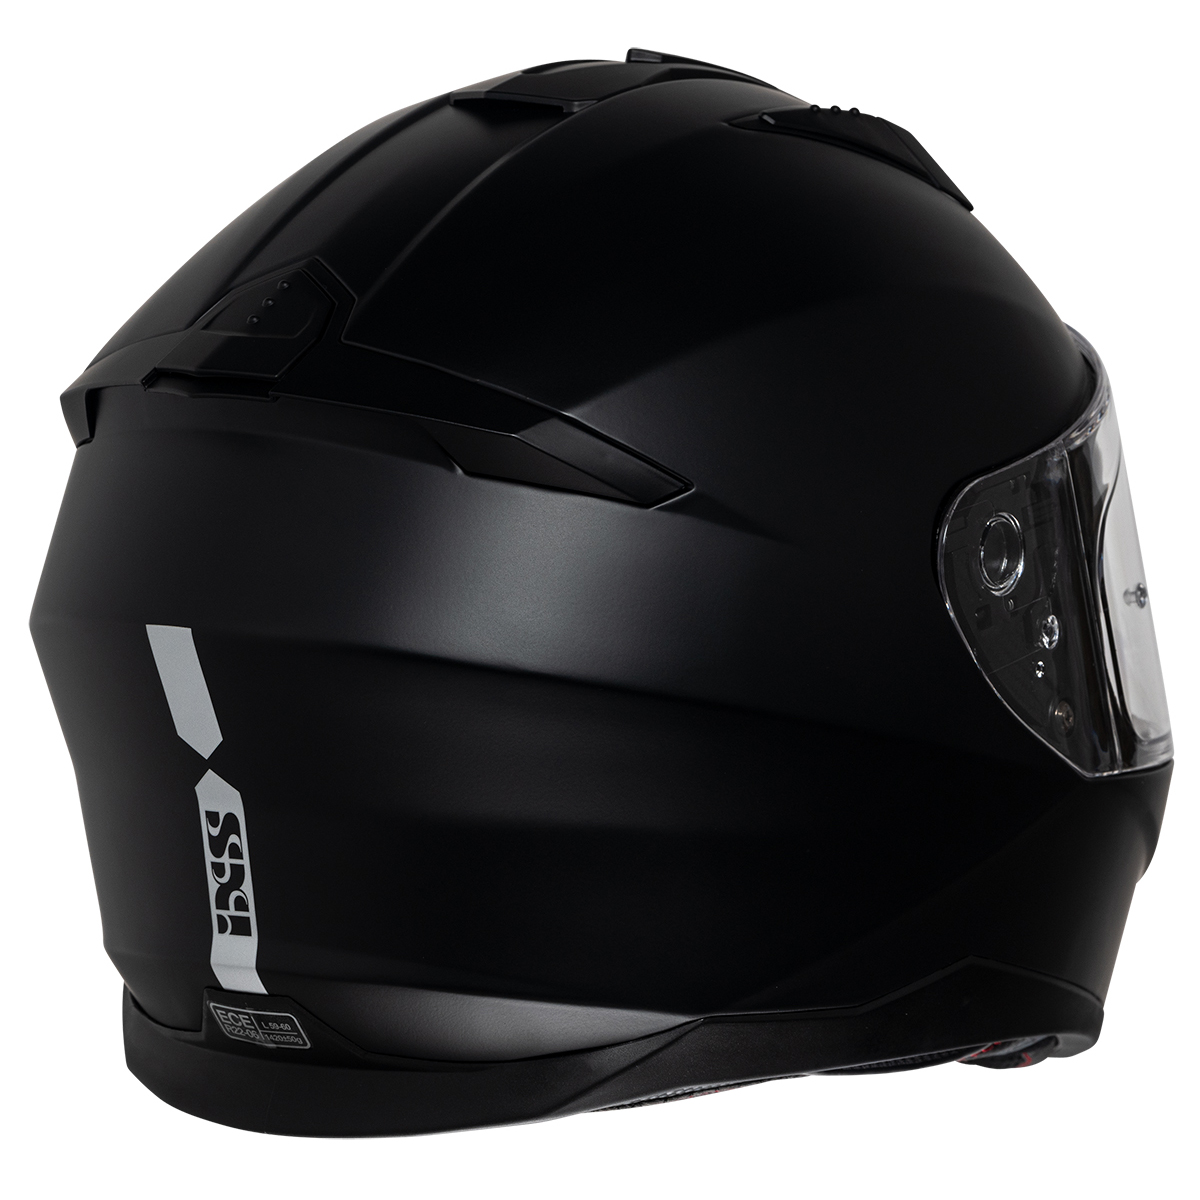 iXS Helm iXS217 1.0, schwarz matt